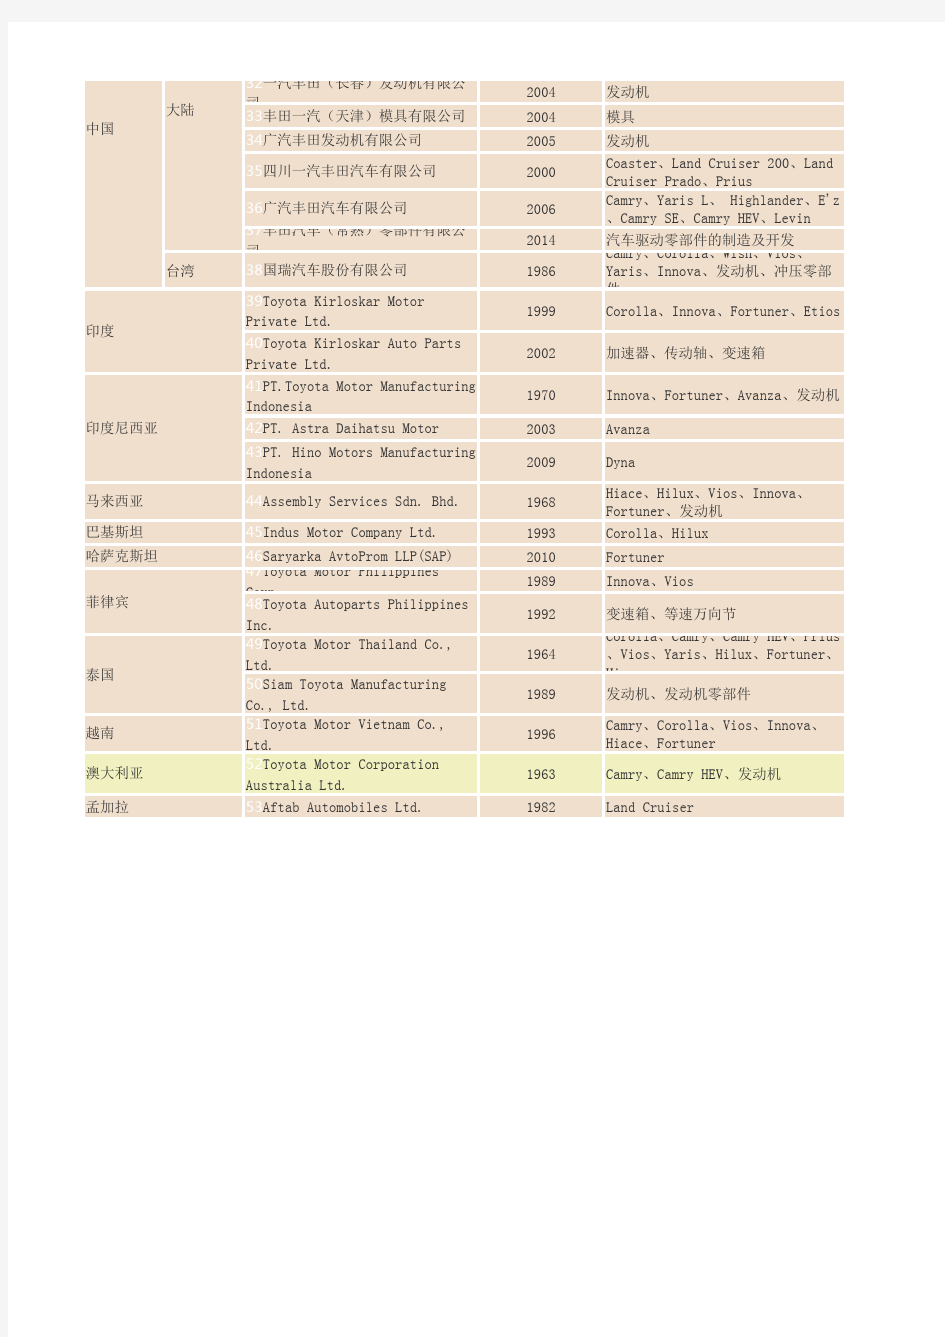 丰田海外工厂一览表截至2014年10月